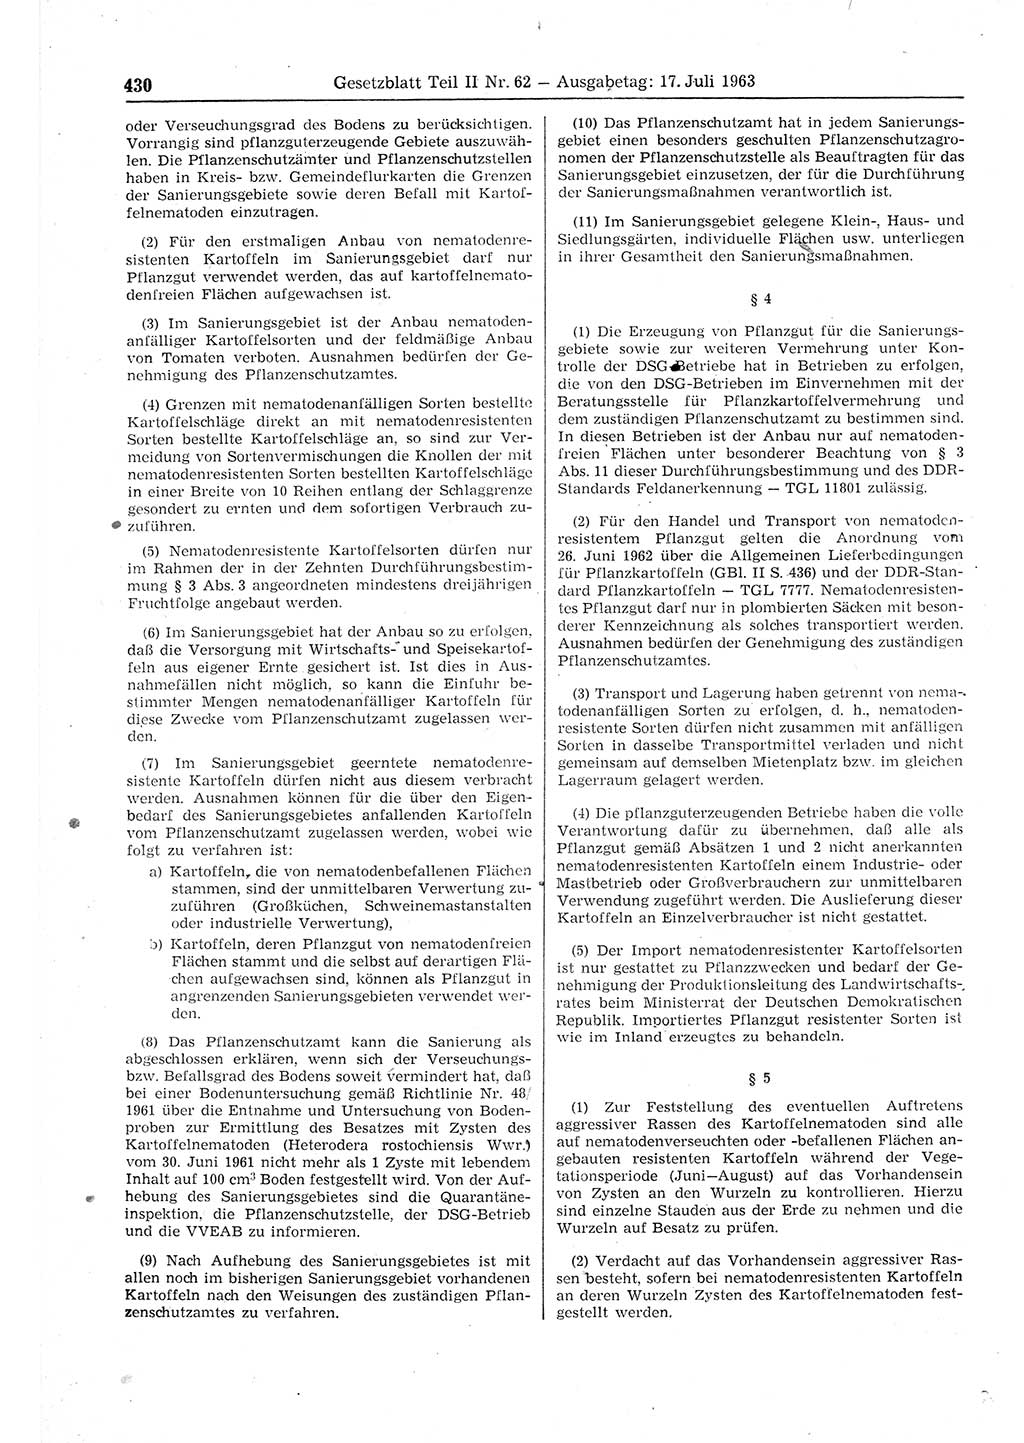 Gesetzblatt (GBl.) der Deutschen Demokratischen Republik (DDR) Teil ⅠⅠ 1963, Seite 430 (GBl. DDR ⅠⅠ 1963, S. 430)